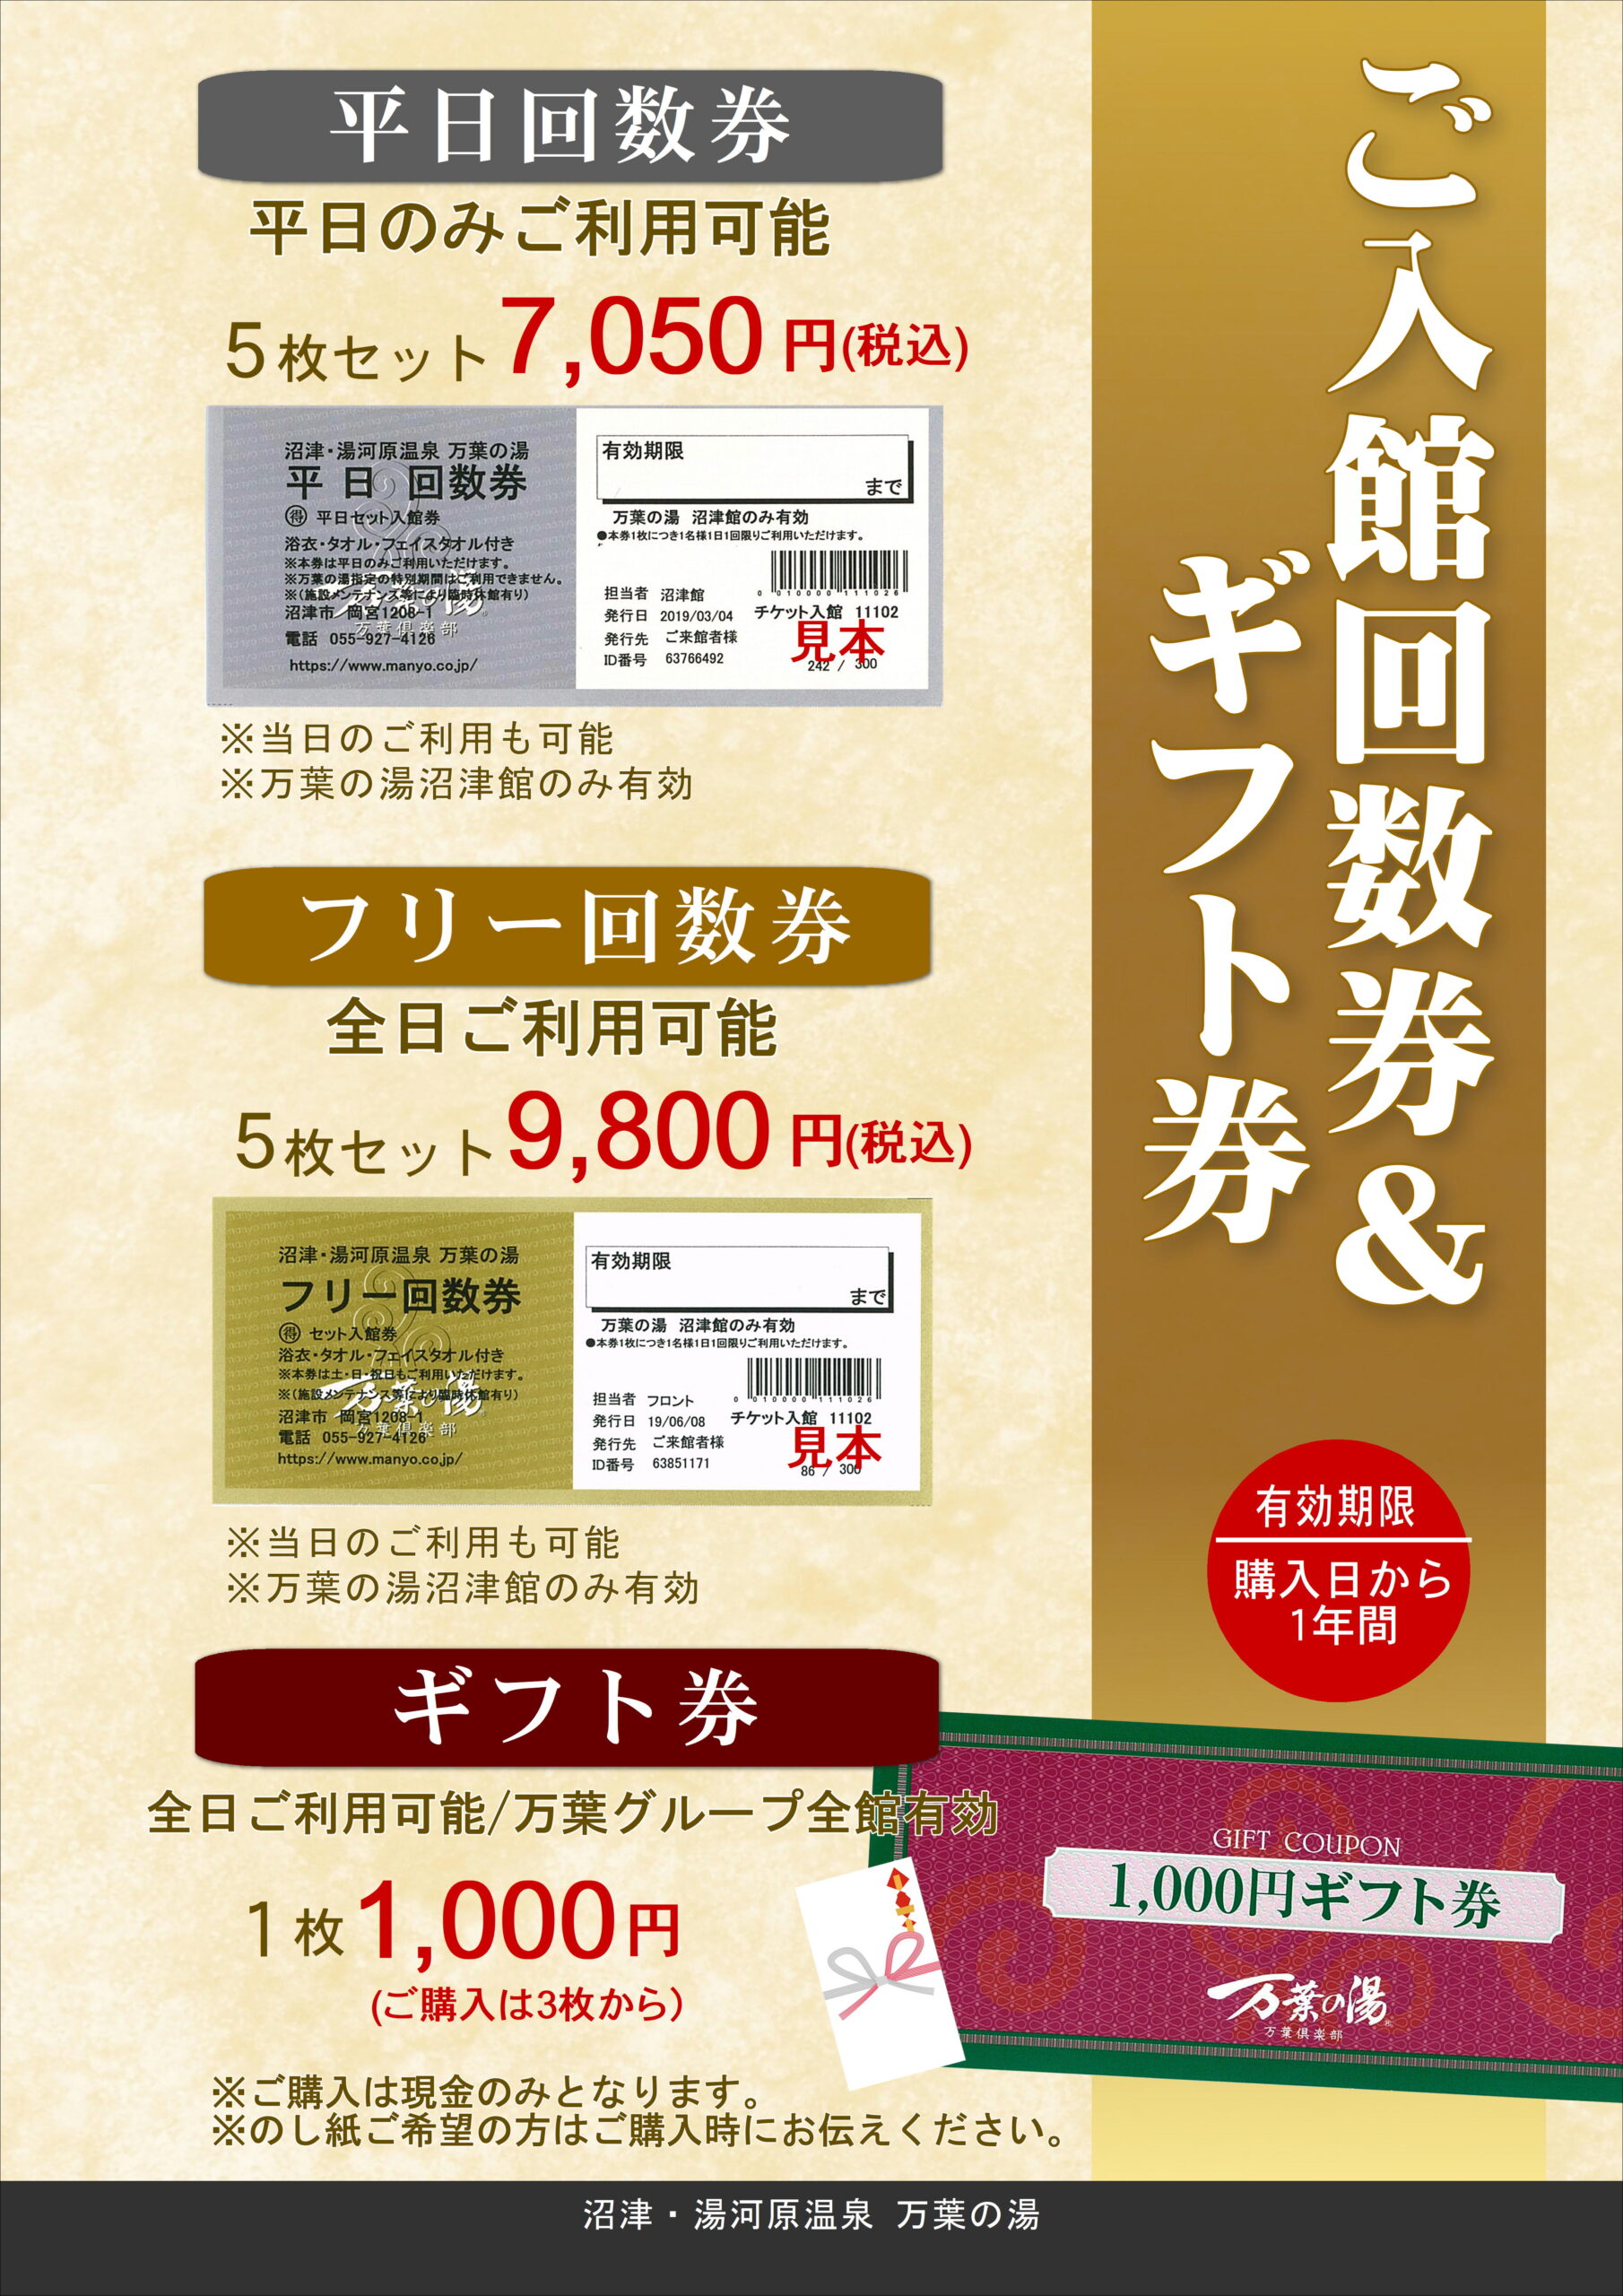 ブルーノート東京 ギフトカード 2万円分 - コンサート